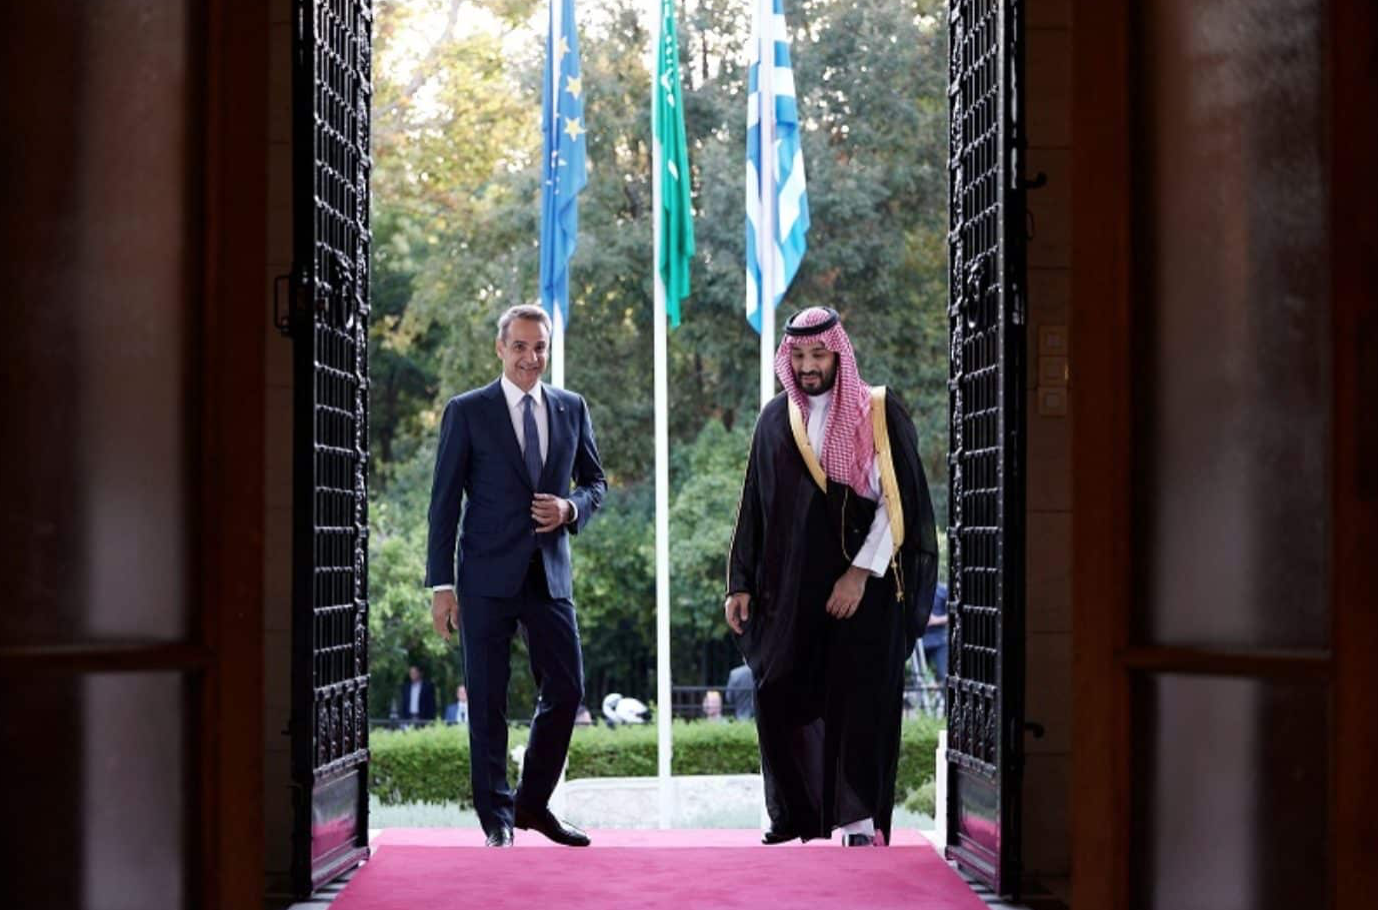 Μουντιάλ 2030: Πιθανή συνεργασία με τη Σαουδική Αραβία θα μας διασύρει ως χώρα